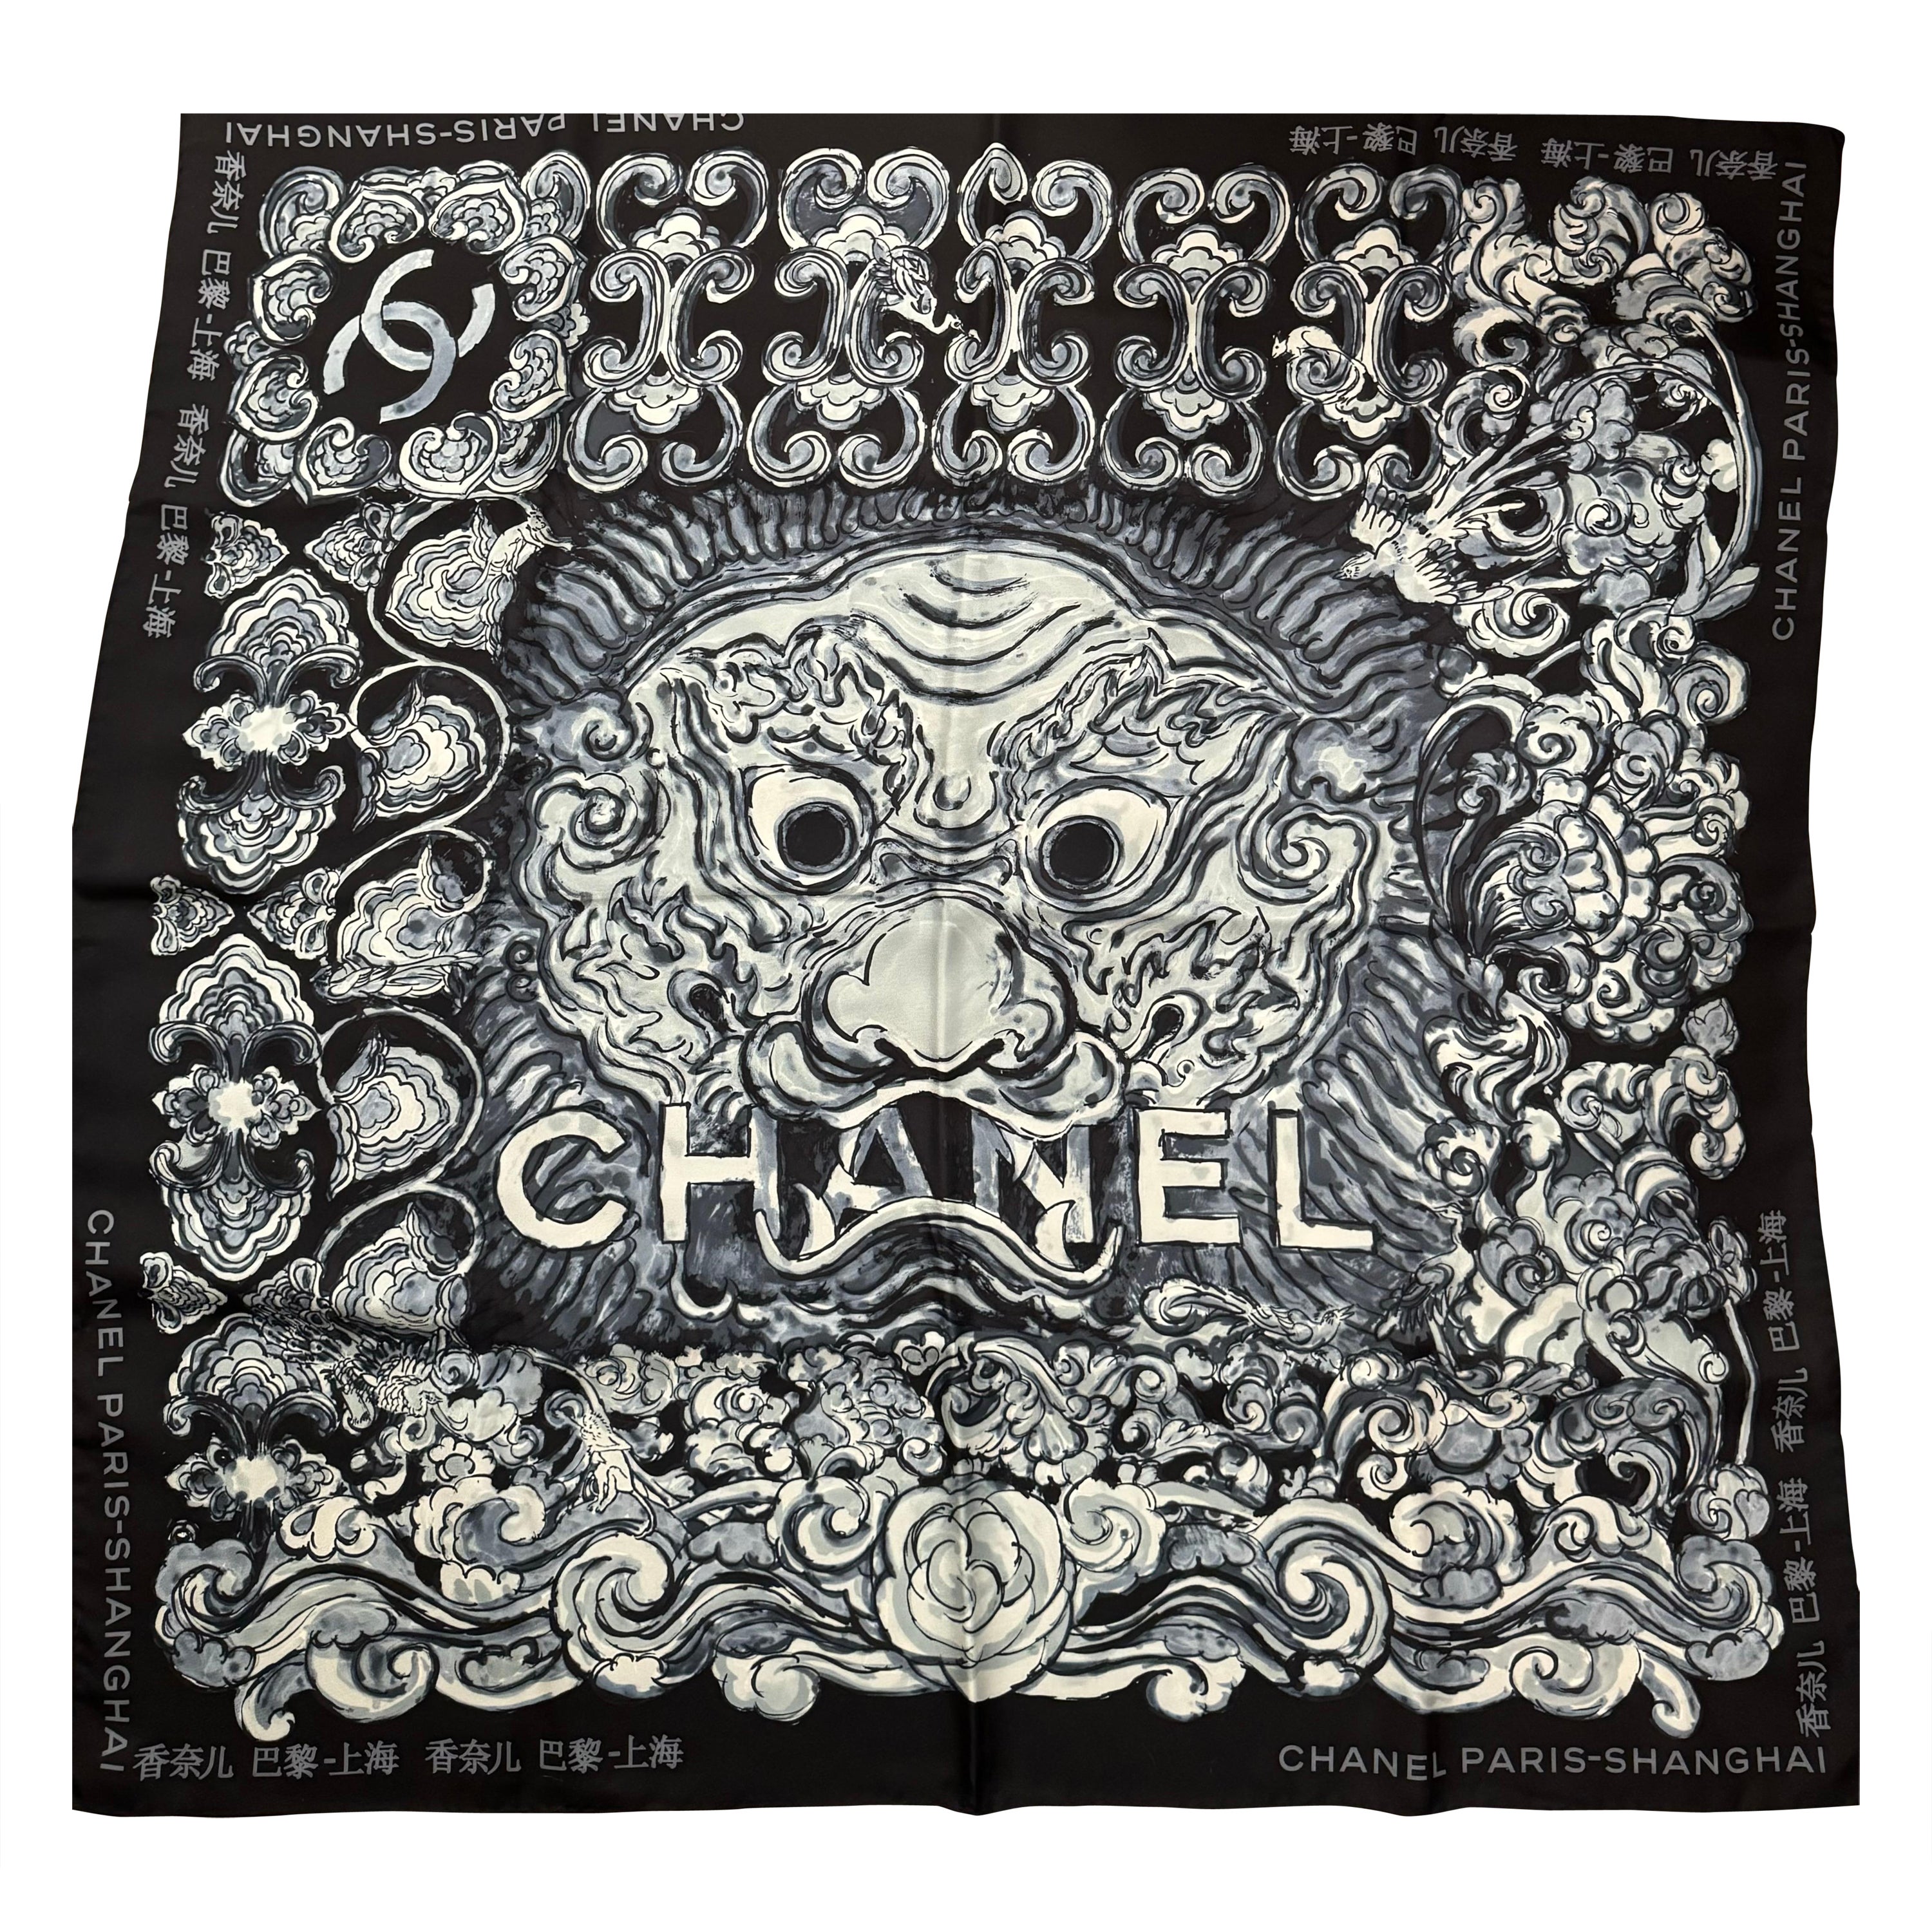 Chanel Paris Shanghai 2010 - Écharpe en soie rare, édition limitée 